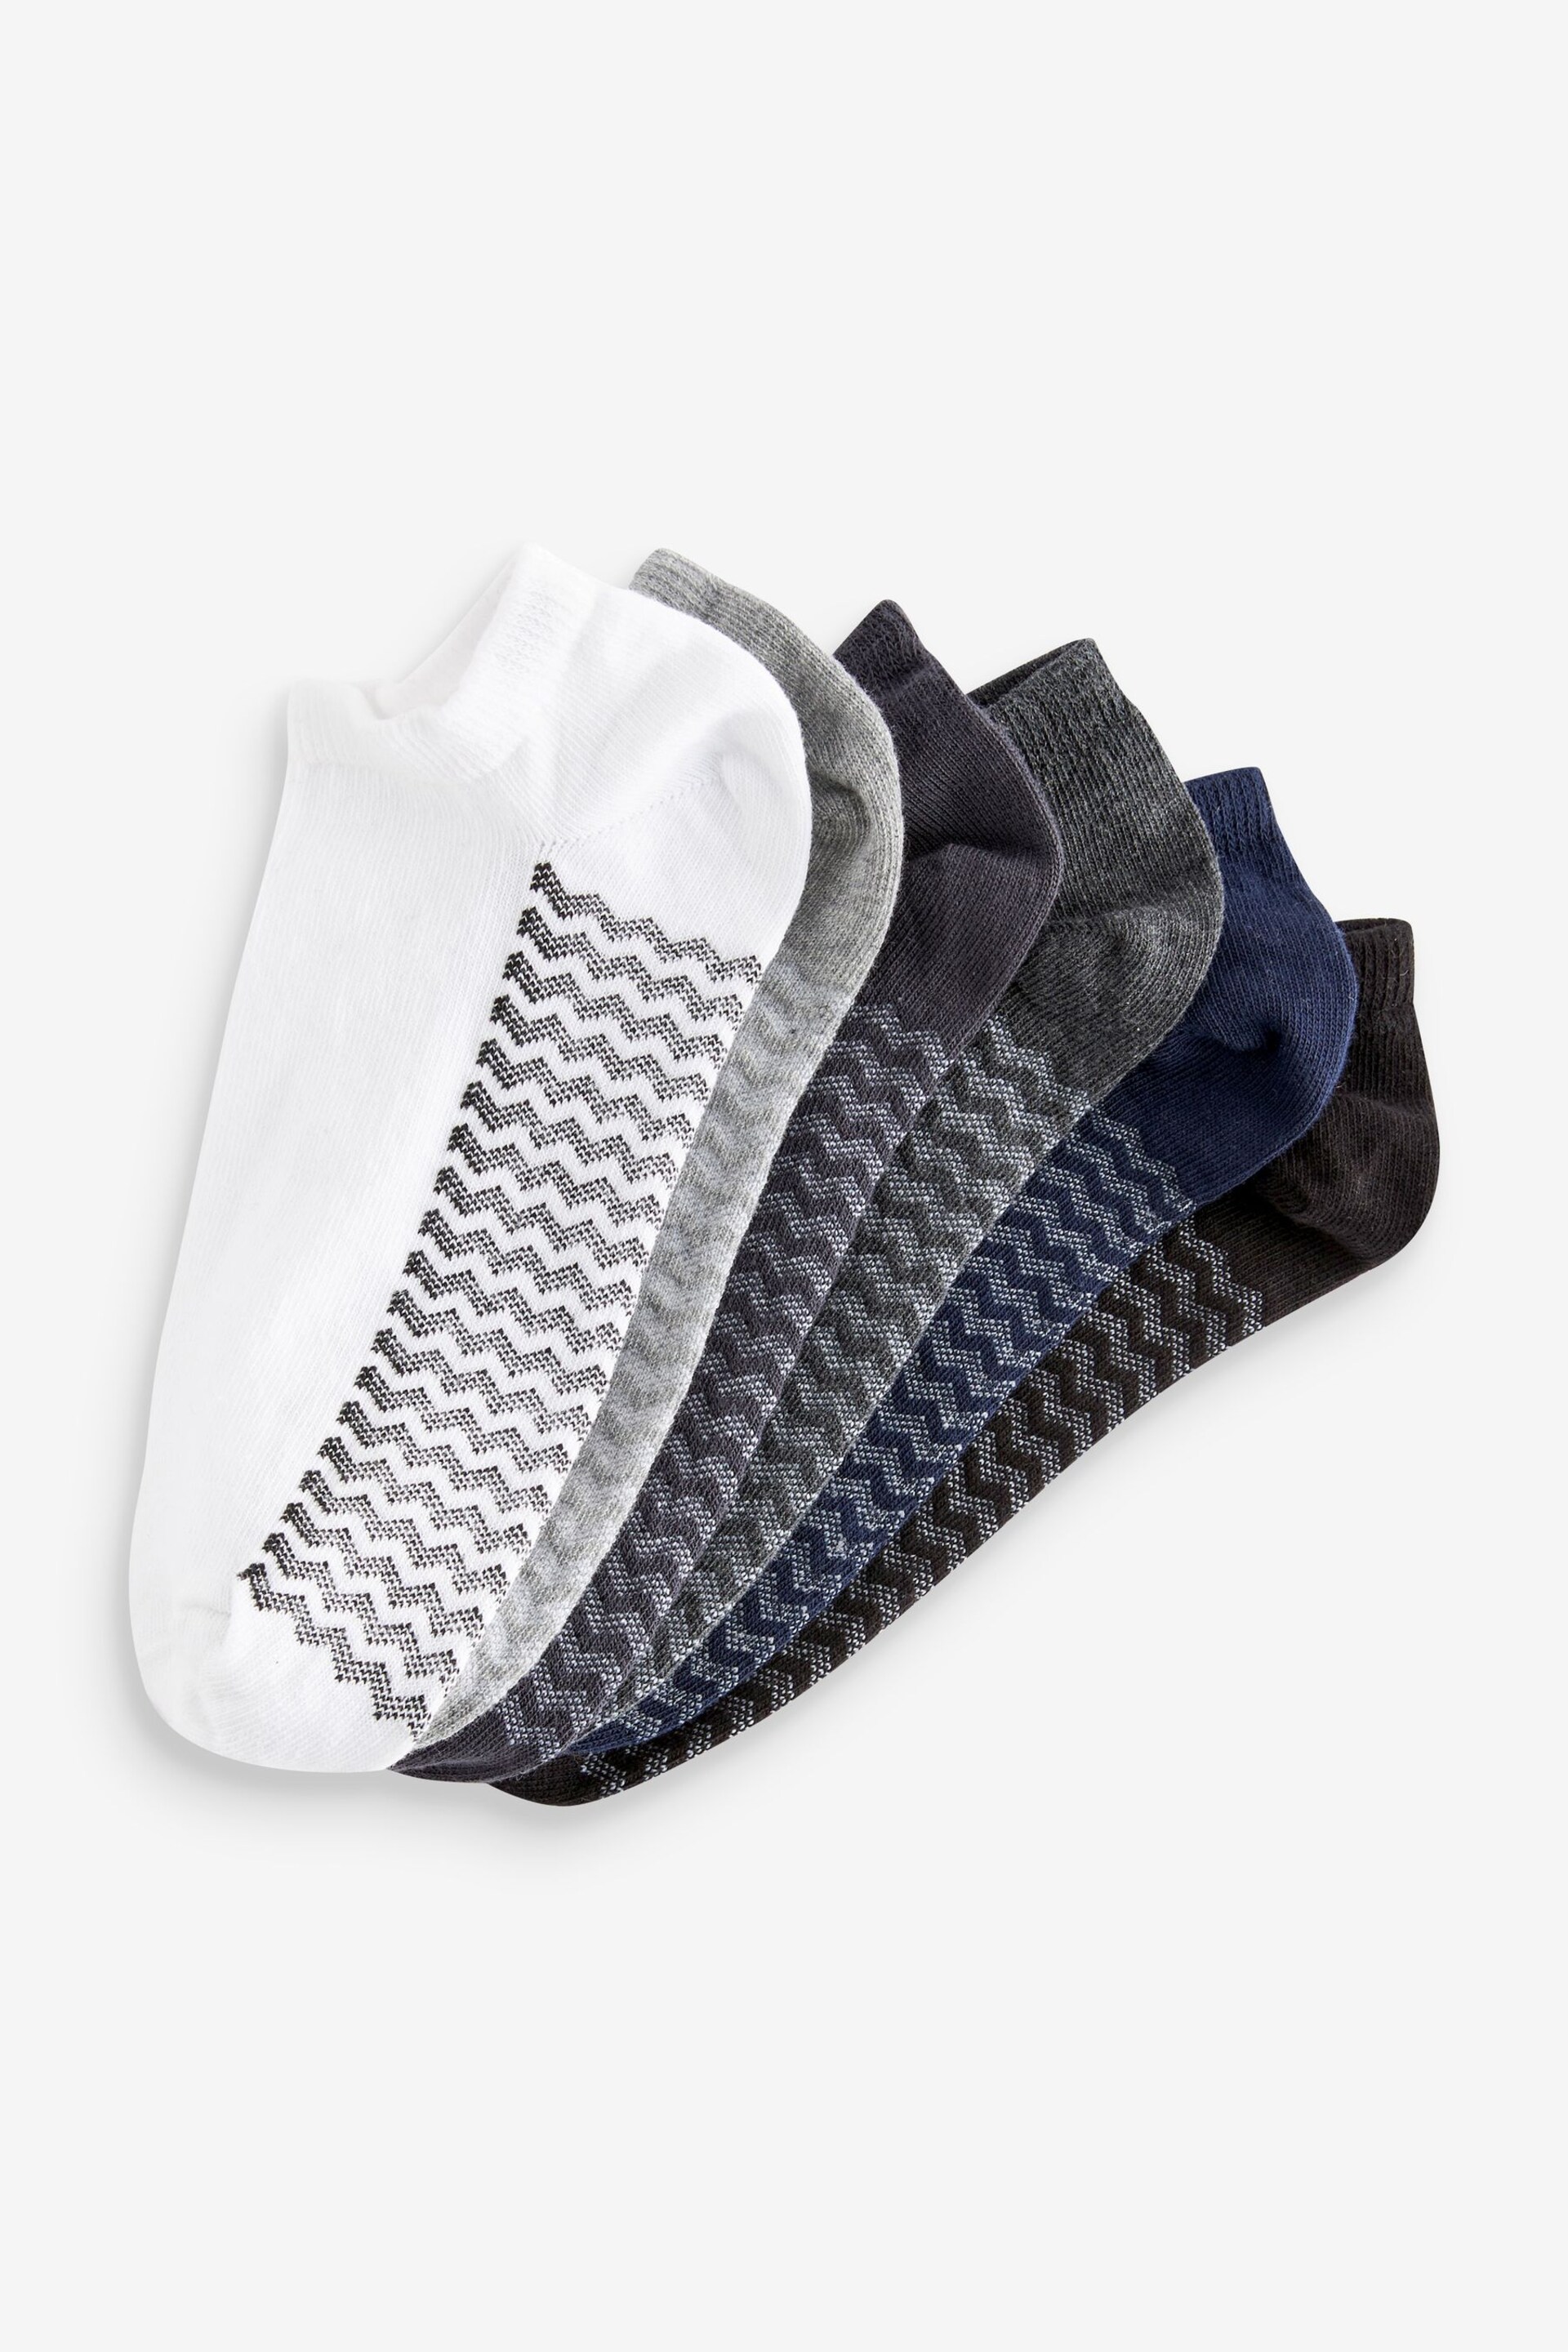 White/Grey/Black Zig Zag 6 Pack Trainer Socks - Image 8 of 9